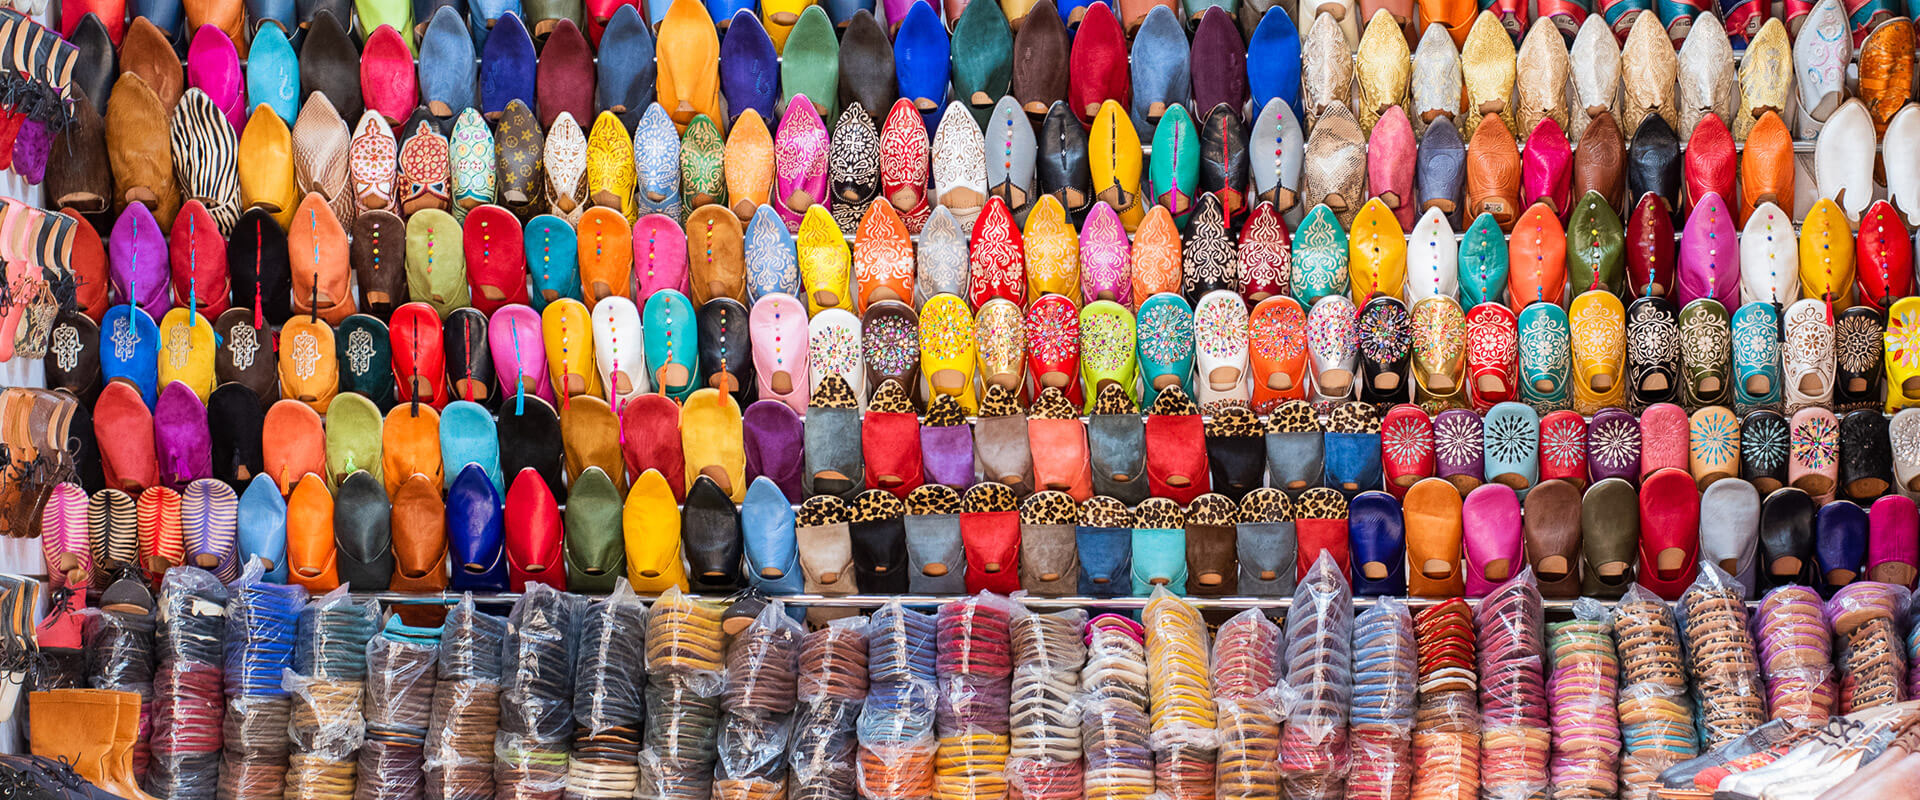 8 planes que deberías hacer si viajas a Marrakech